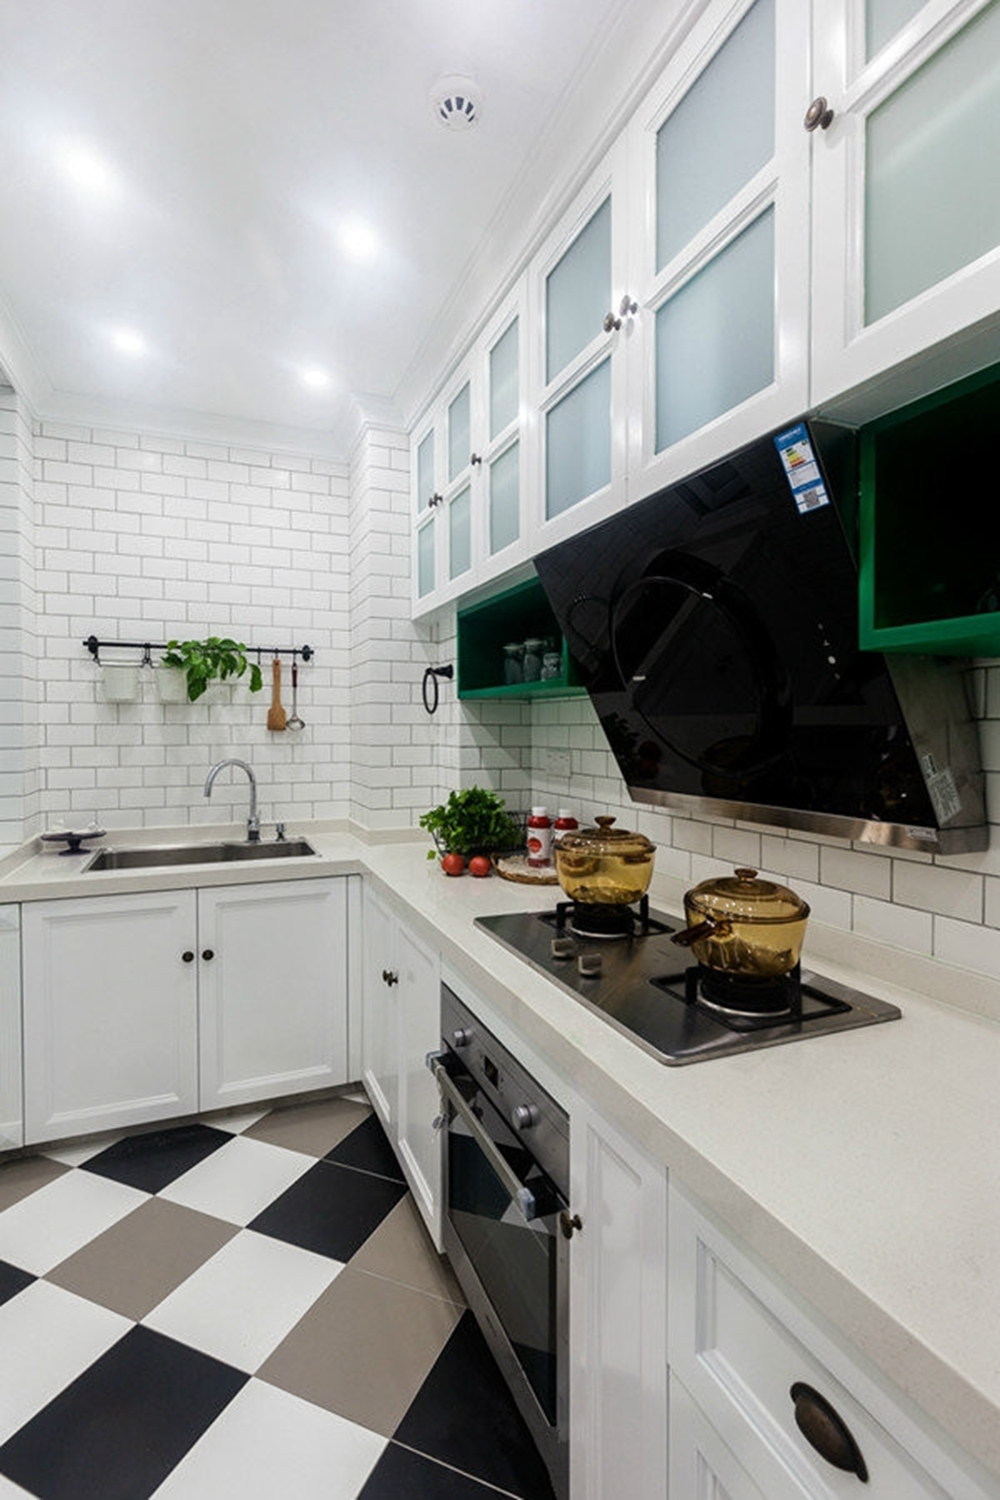 地面拼砖设计凸显业主品味，白色橱柜规整有序，营造出悠闲安适的烹饪氛围。